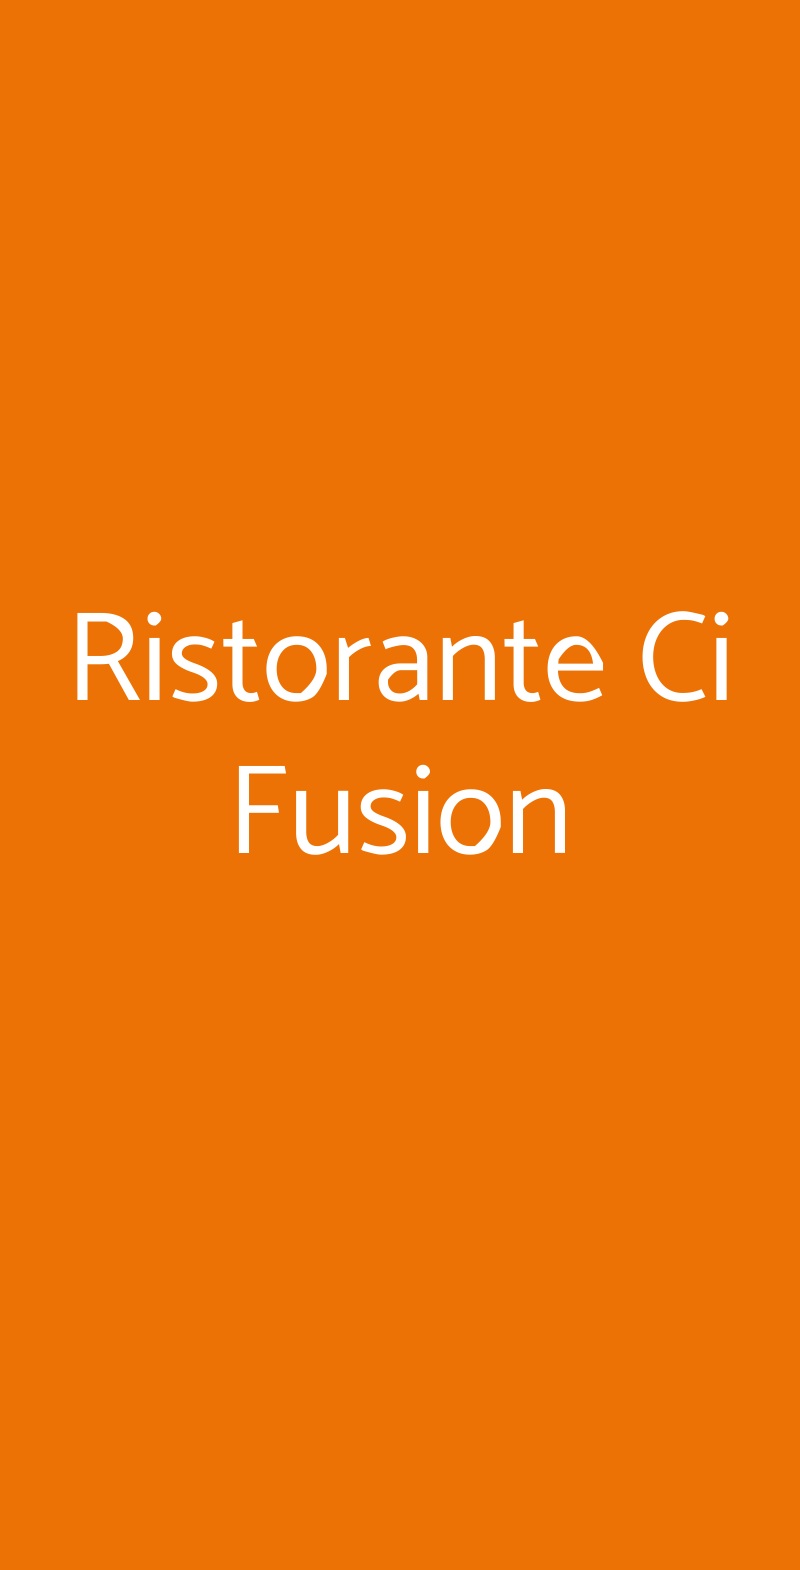 Ristorante Ci Fusion Milano menù 1 pagina